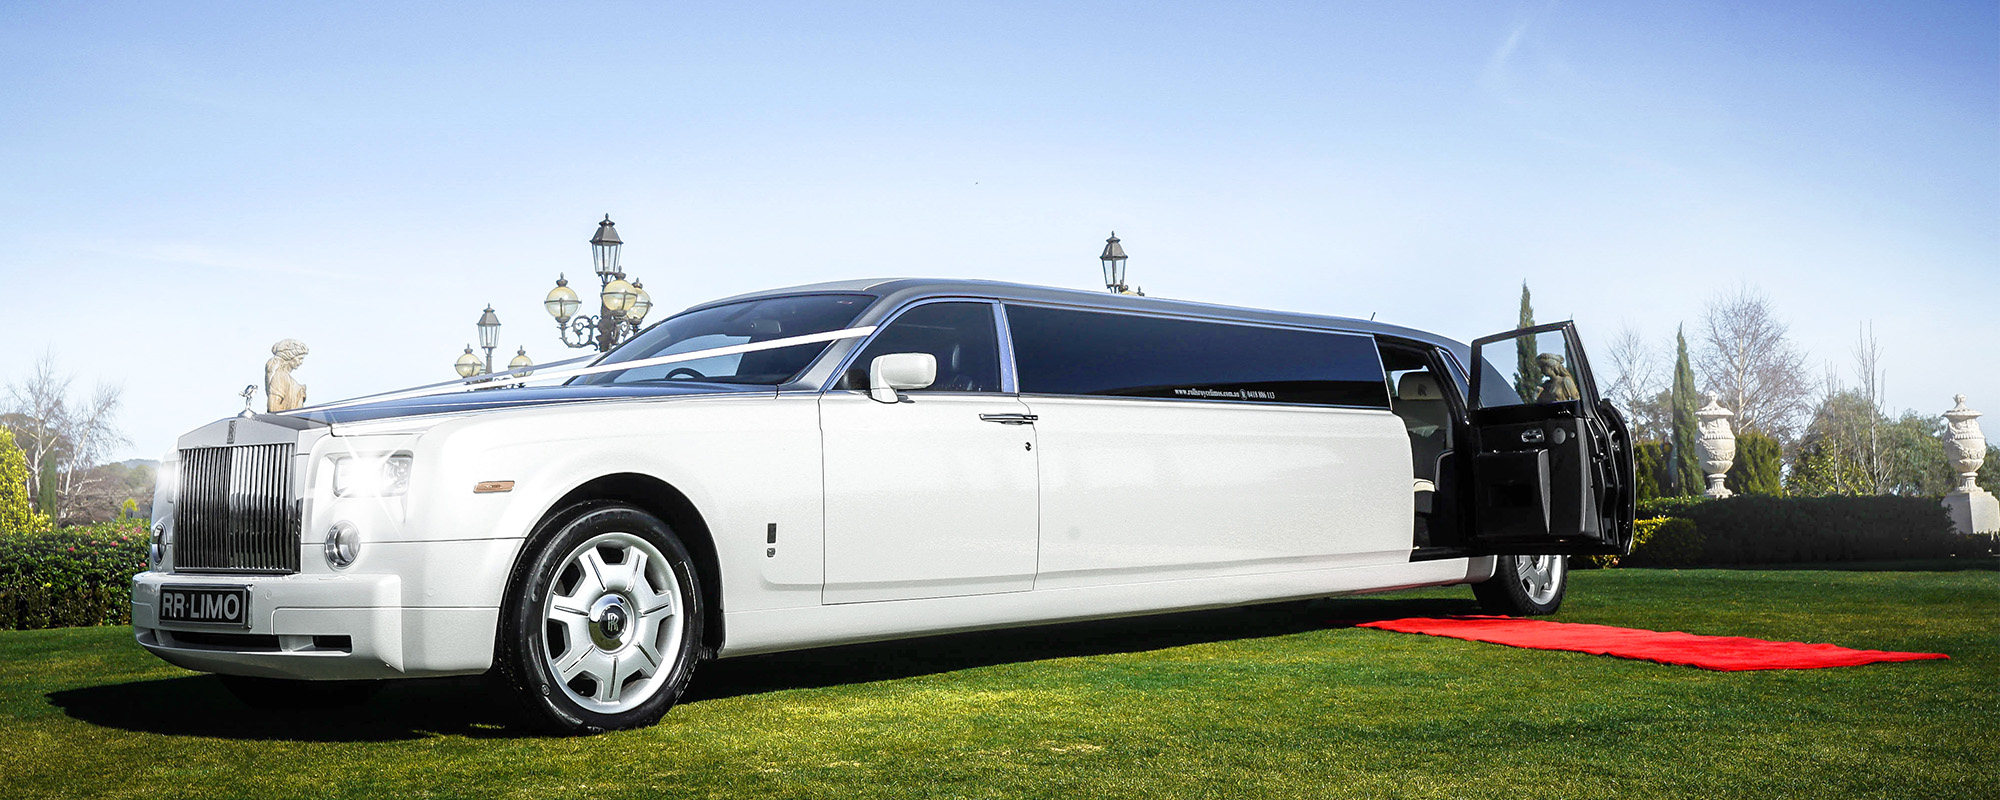 Rolls Royce Limousine Melbourne - Red carpet rolls royce phantom extended limo white